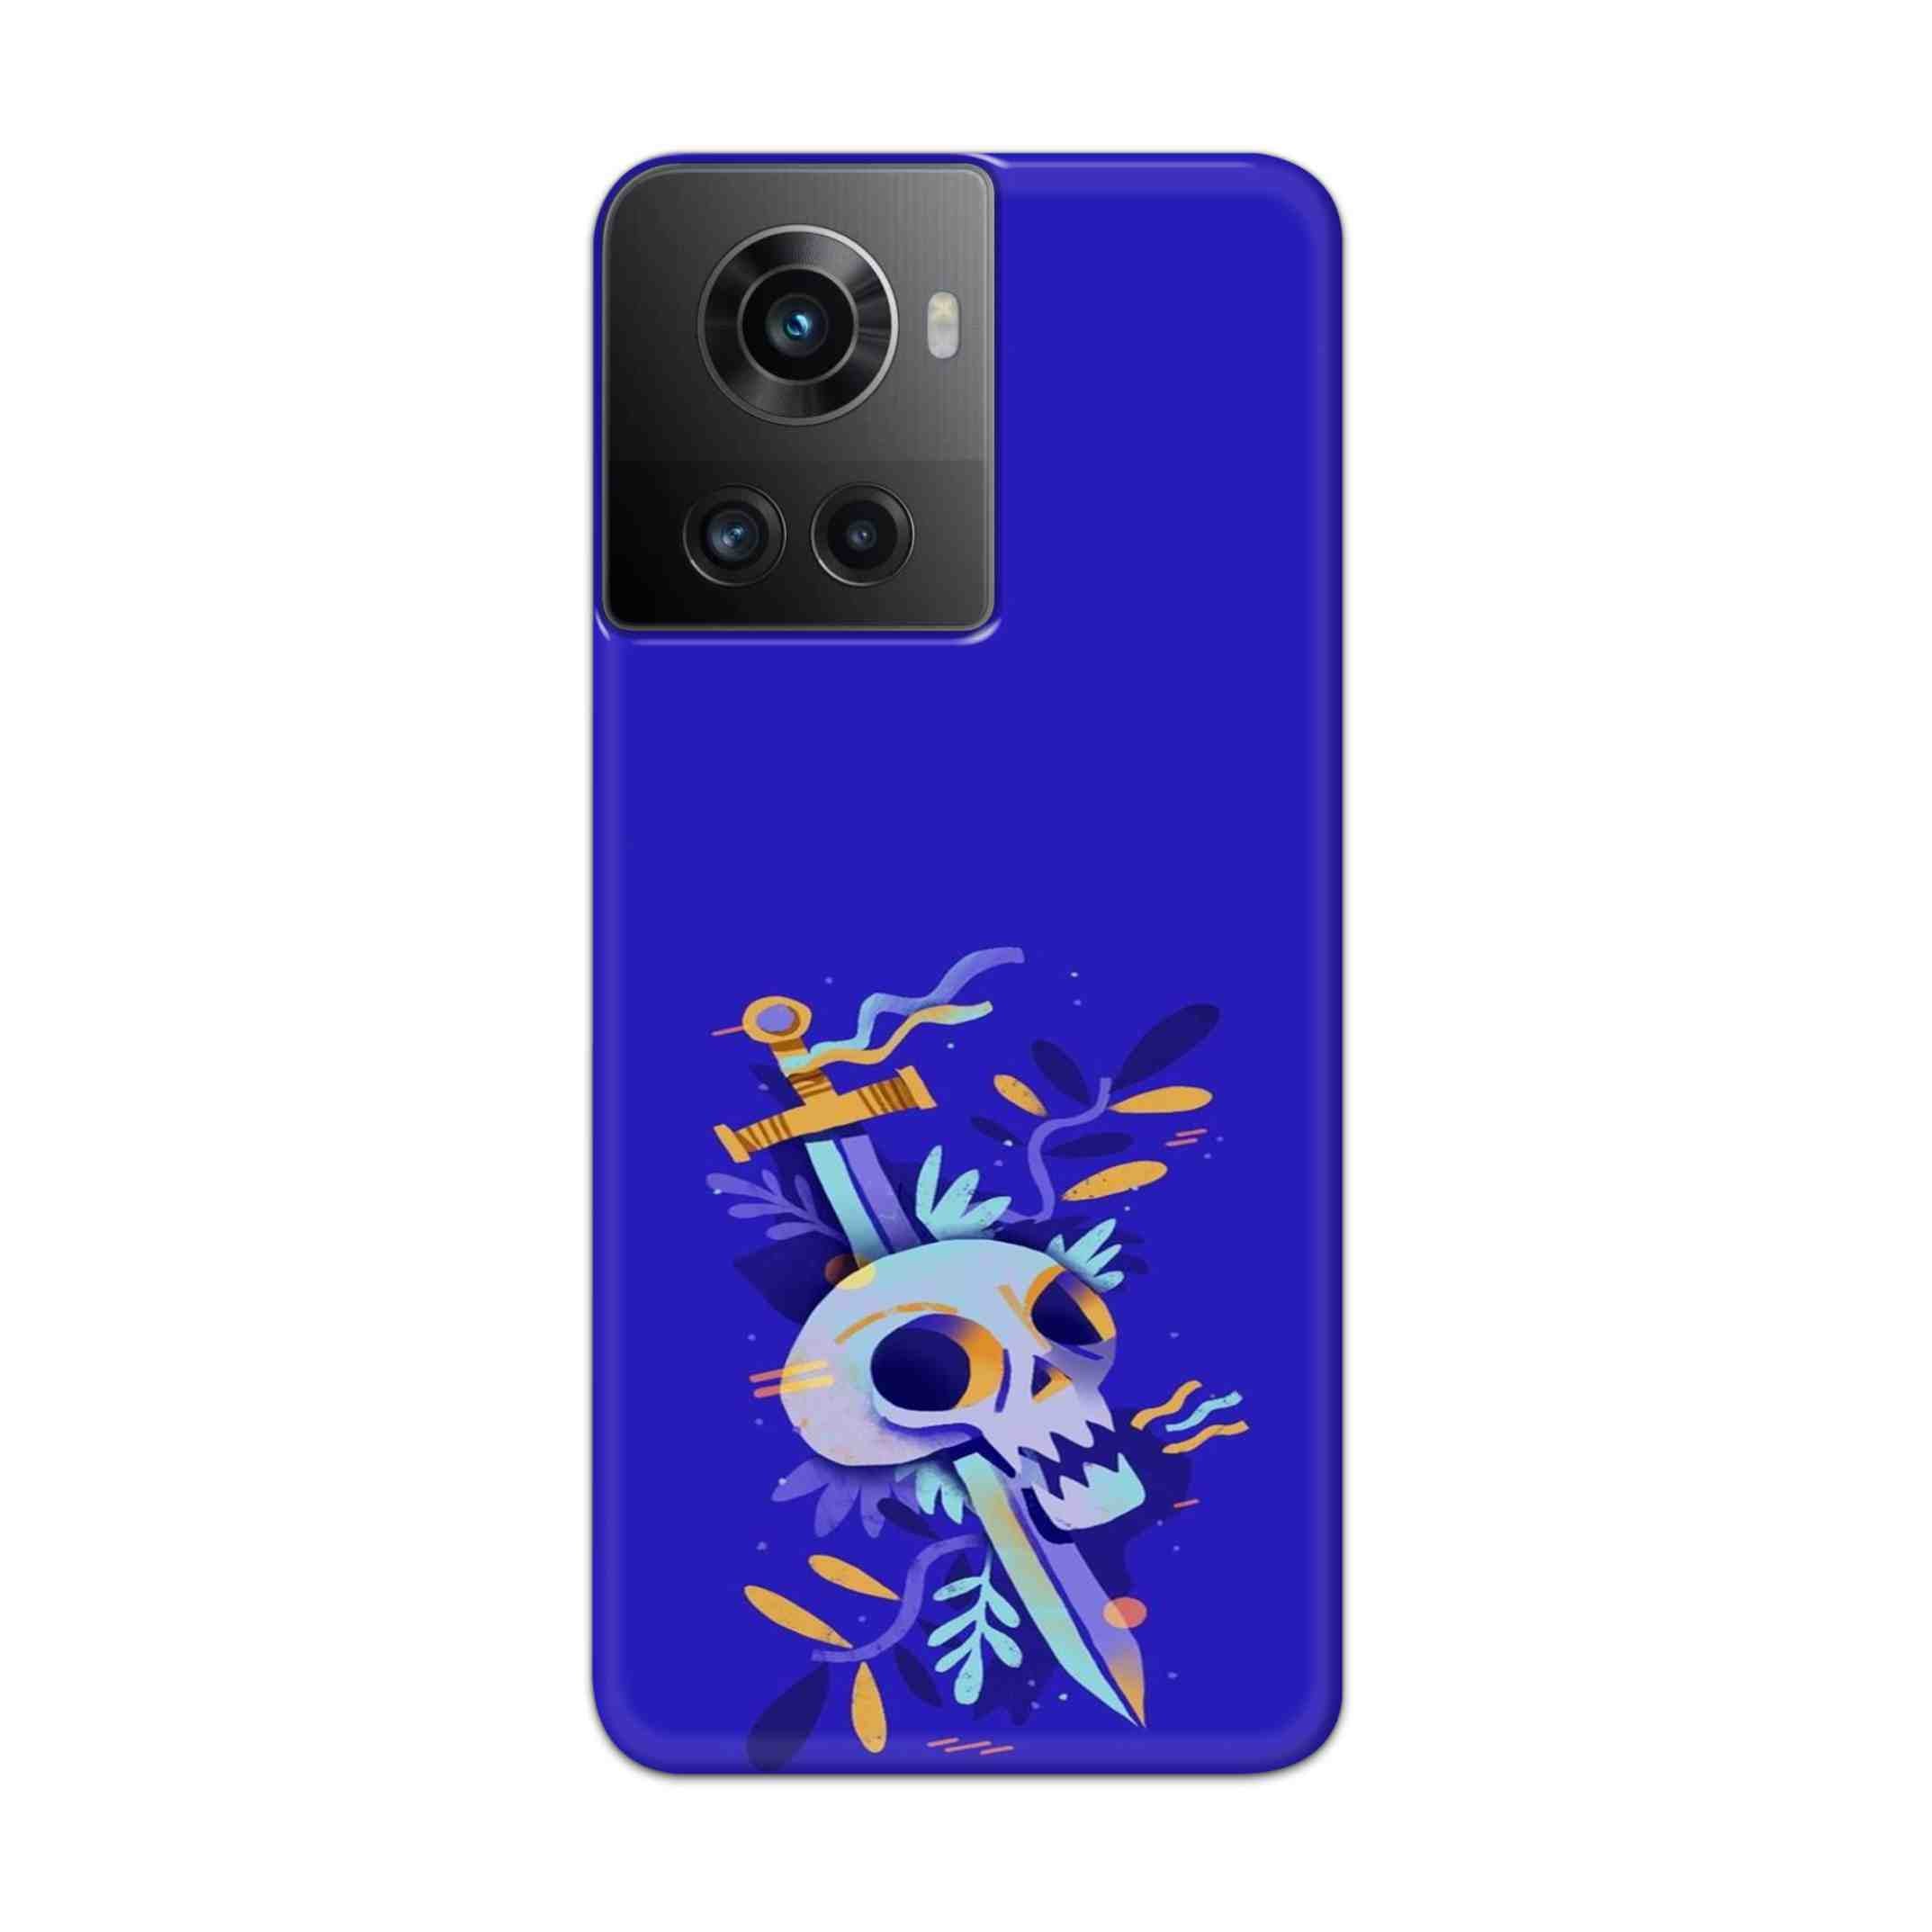 Buy Blue Skull Hard Back Mobile Phone Case Cover For Oneplus 10R Online